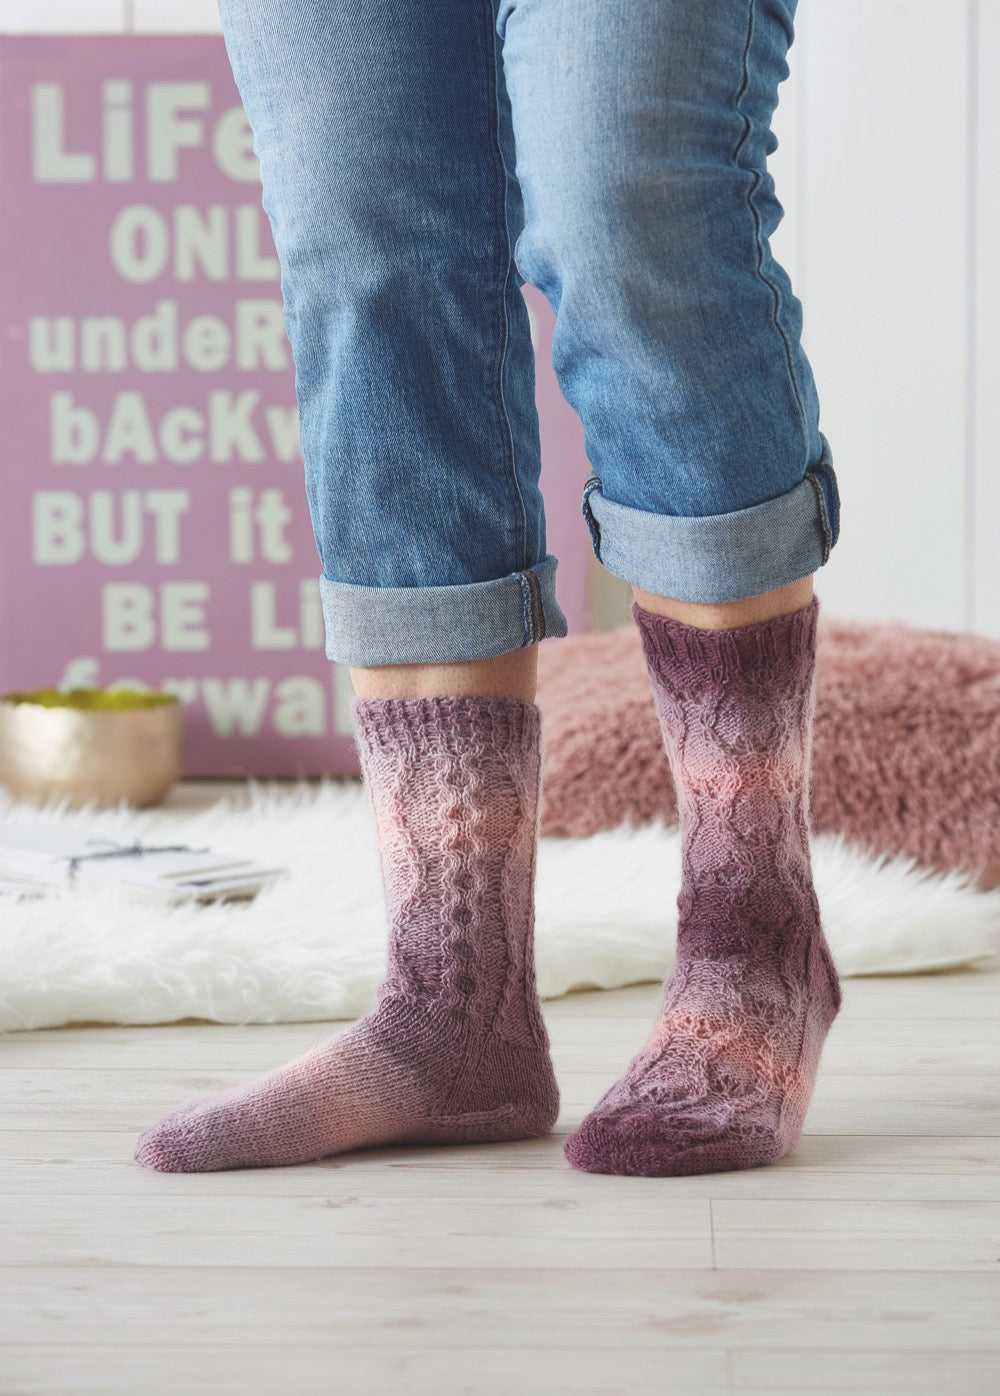 Woolly Hugs Year Socks stricken mit japanischen Mustern